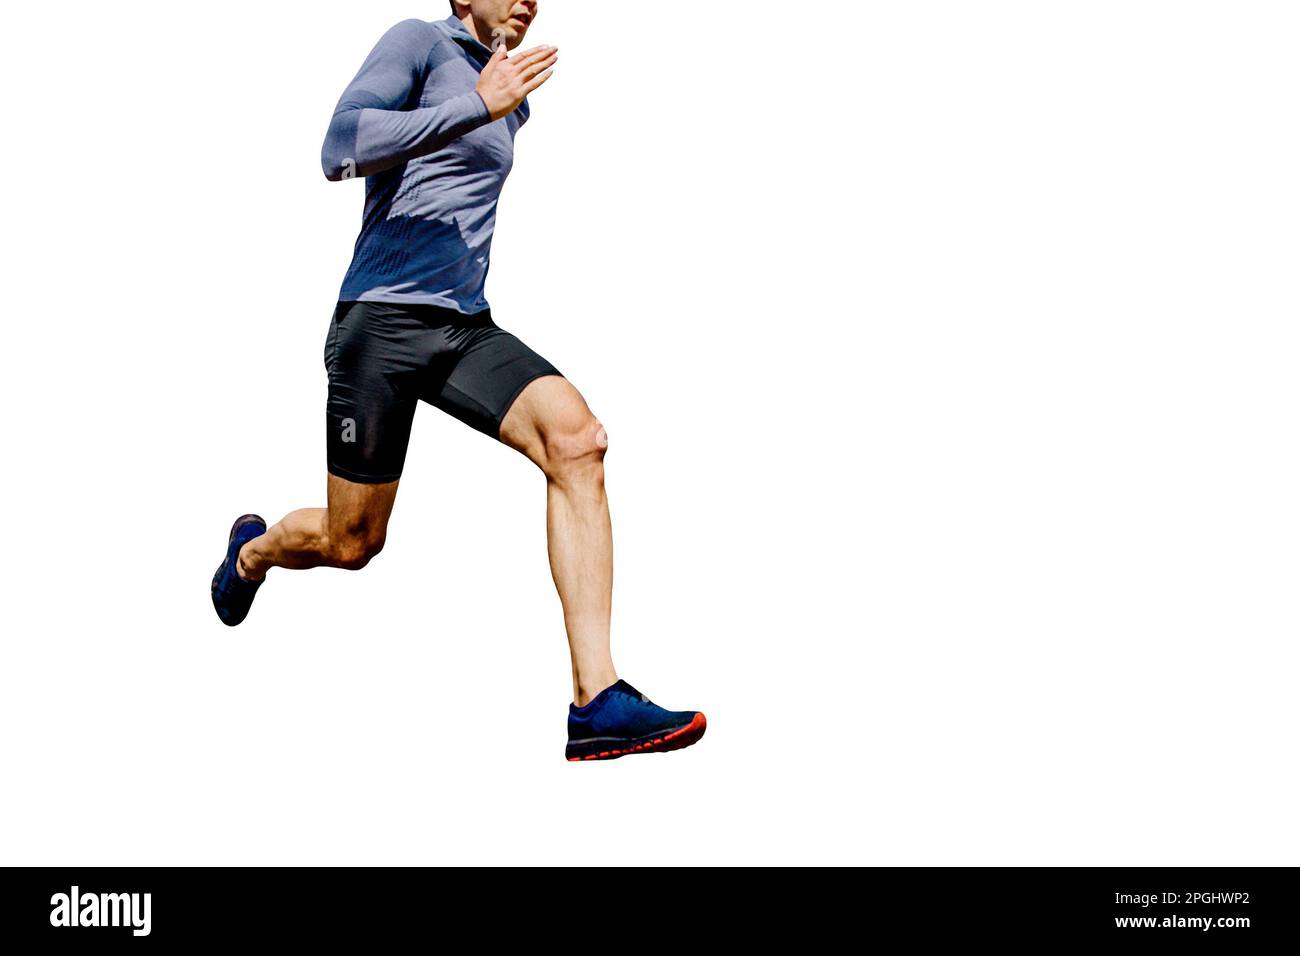 Vorderansicht männlicher Läufer Laufshirt mit langen Ärmeln und schwarze Strumpfhose, Wettkampfrennen, Sportfoto Stockfoto